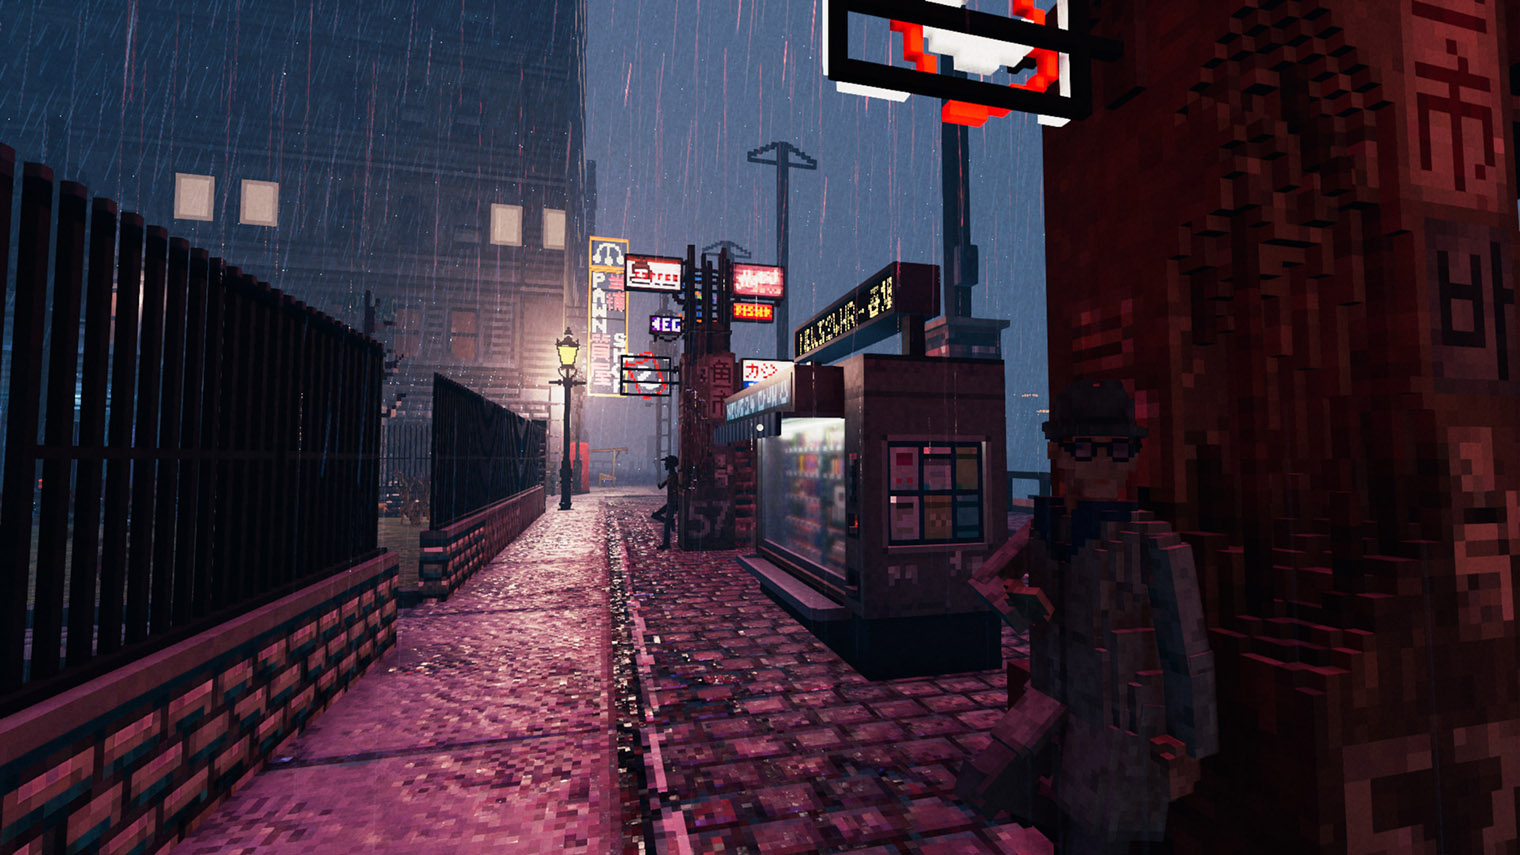 Несмотря на простенькую графику, игра отлично передает атмосферу нуарного детектива. Кадр: Fireshine Games